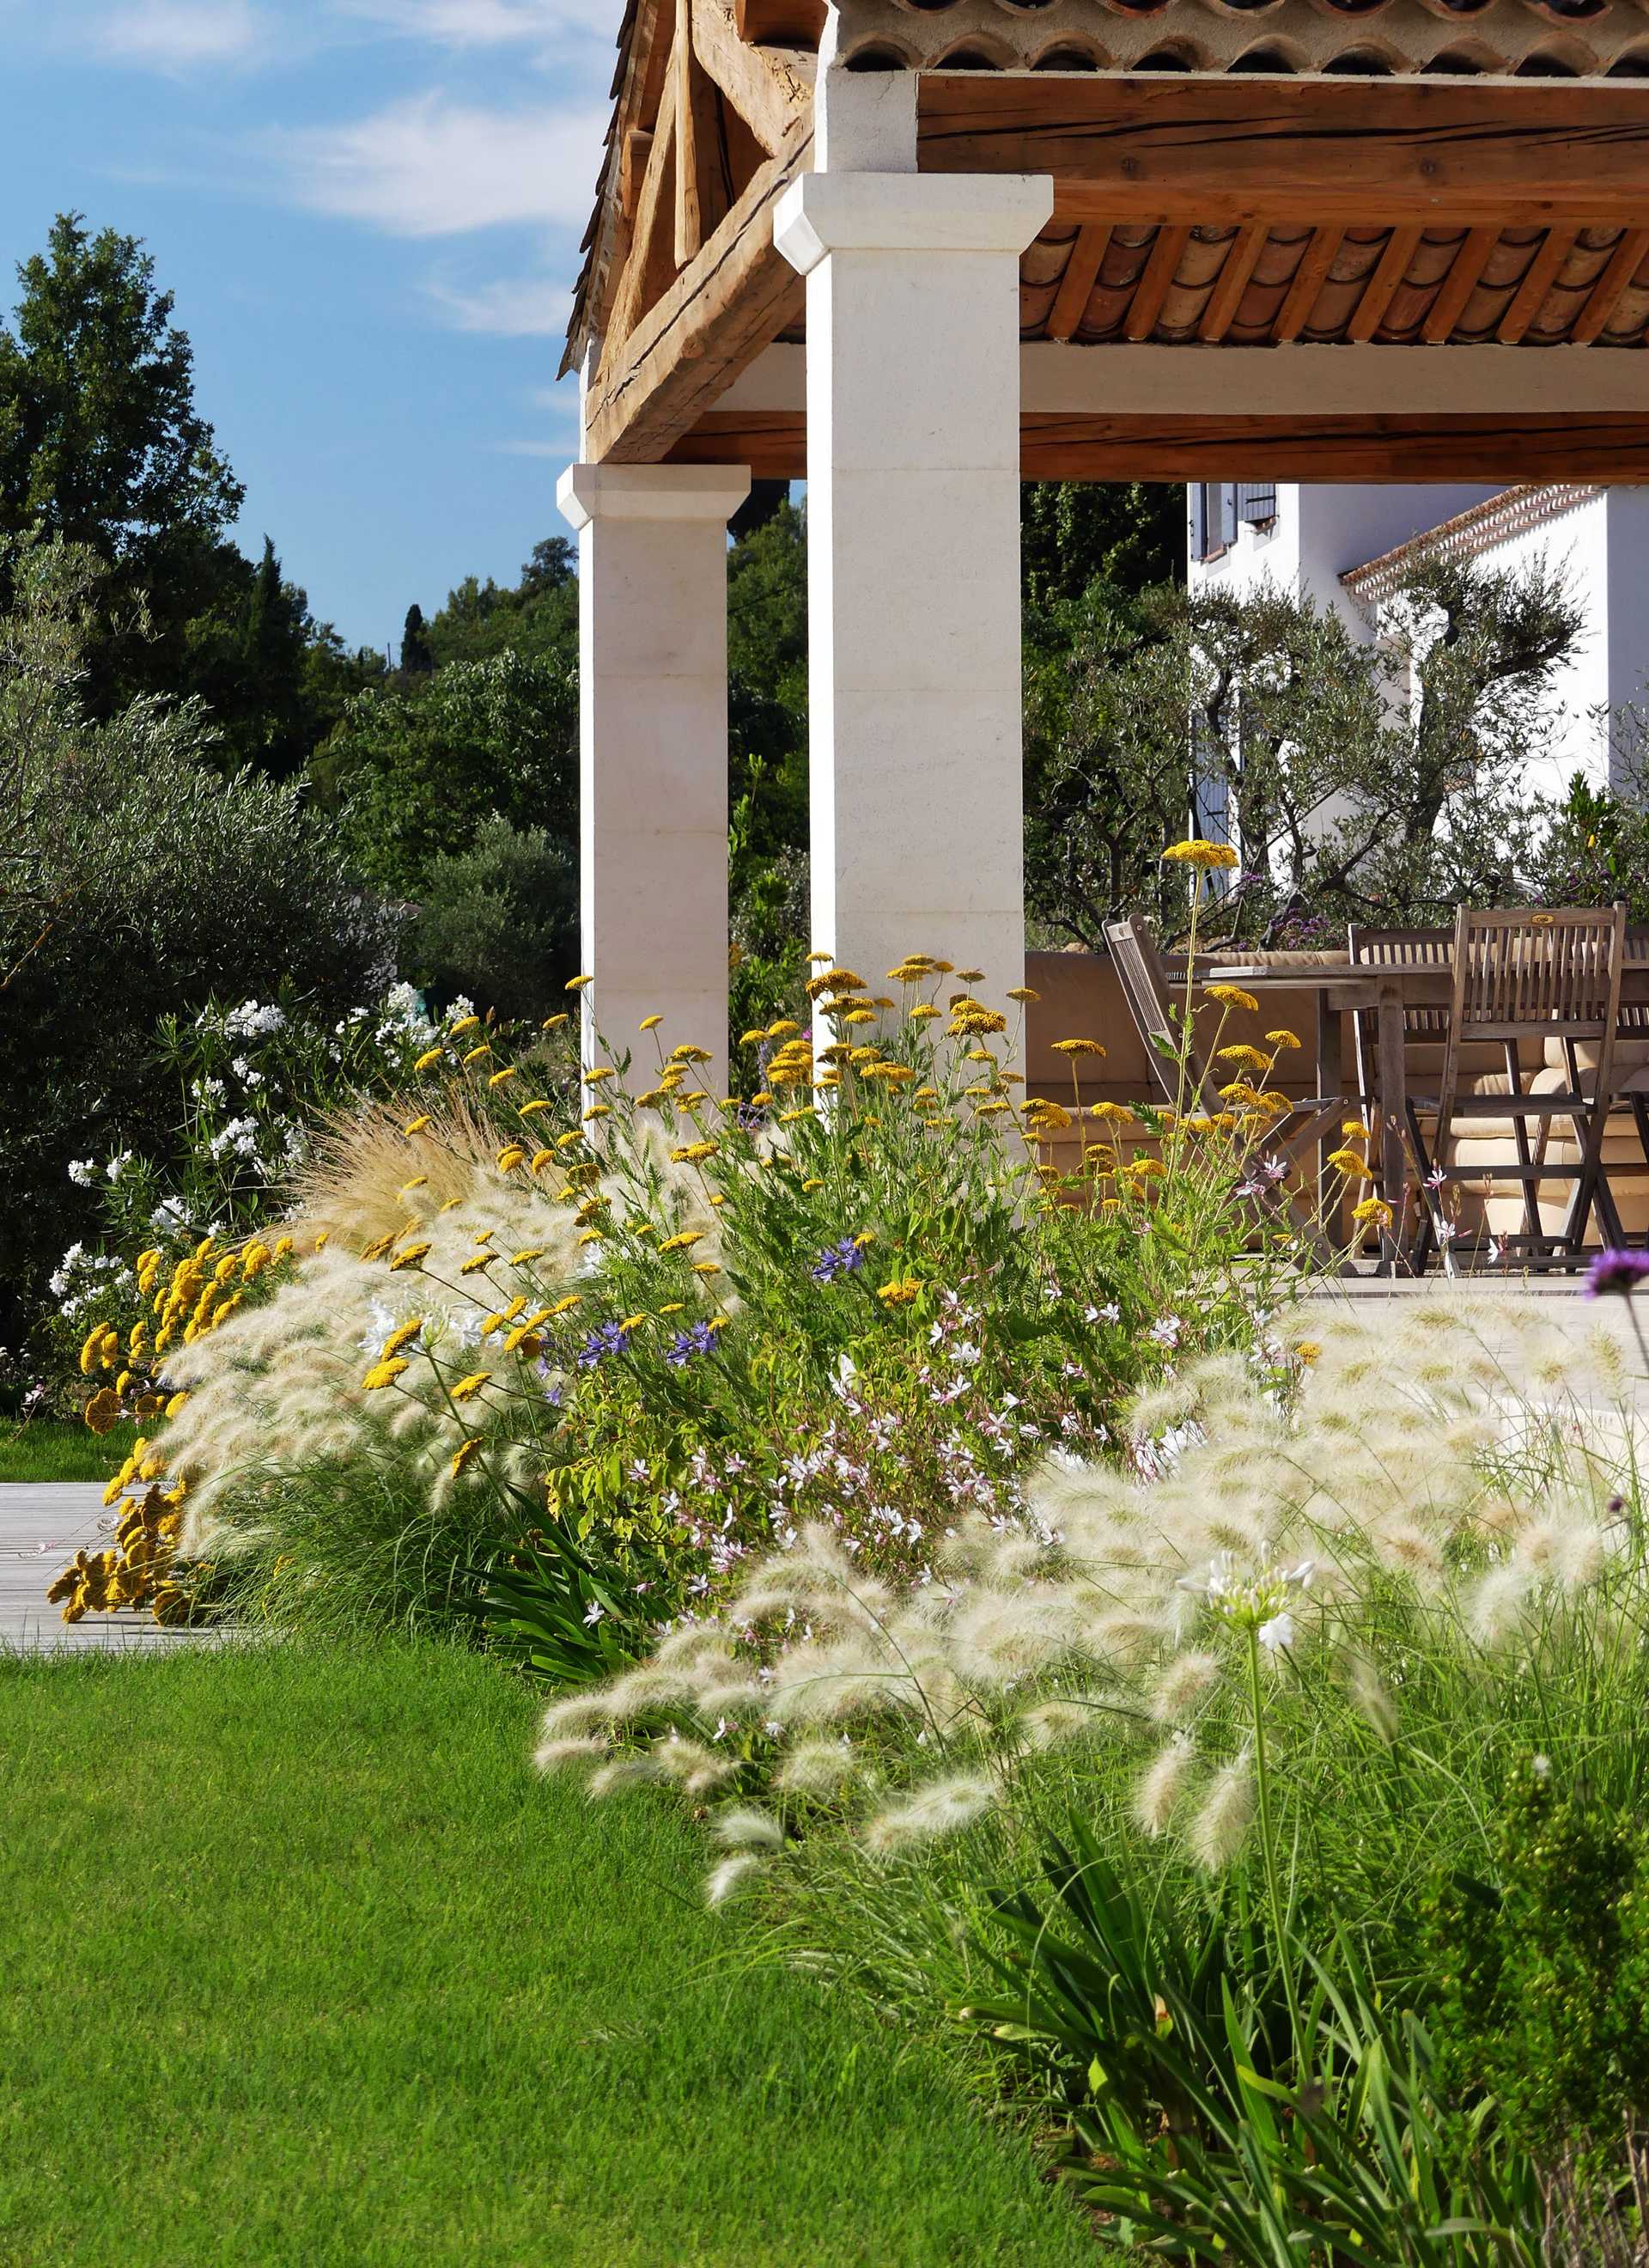 A landscape architect designs a Mediterranean garden in the Marseille region